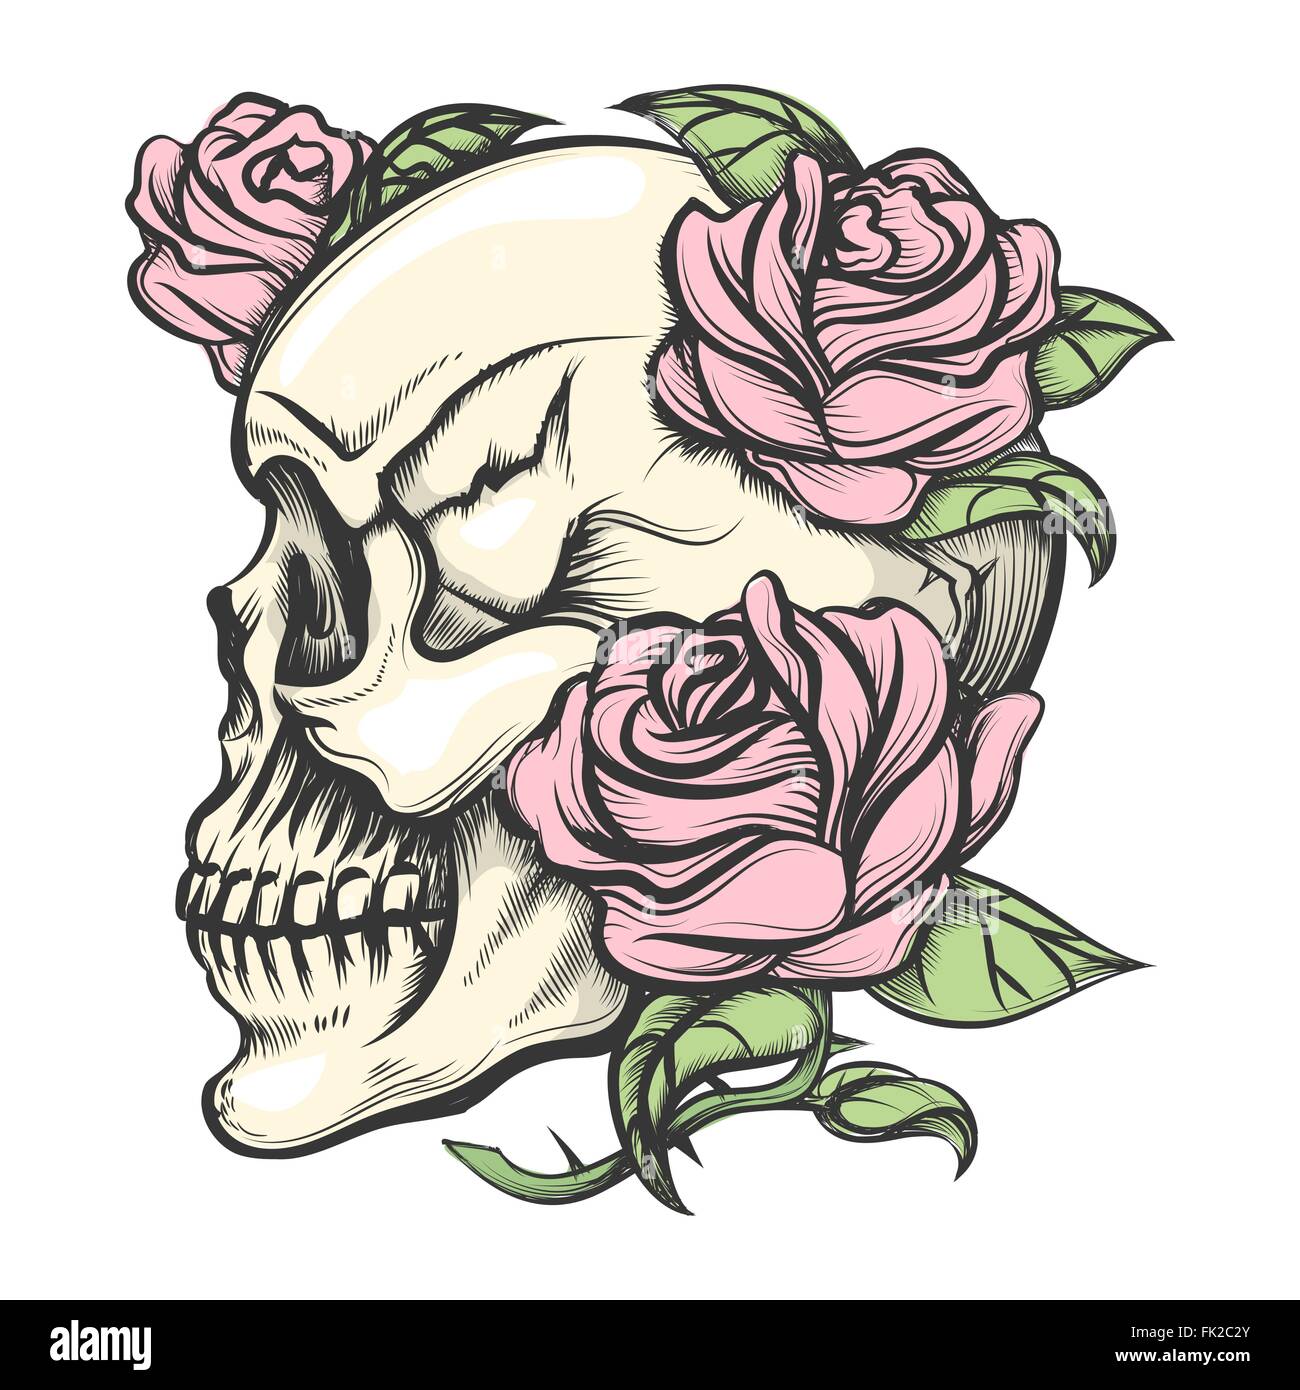 Crâne humain avec des roses dessiné dans le style de tatouage. Isolé sur blanc. Illustration de Vecteur